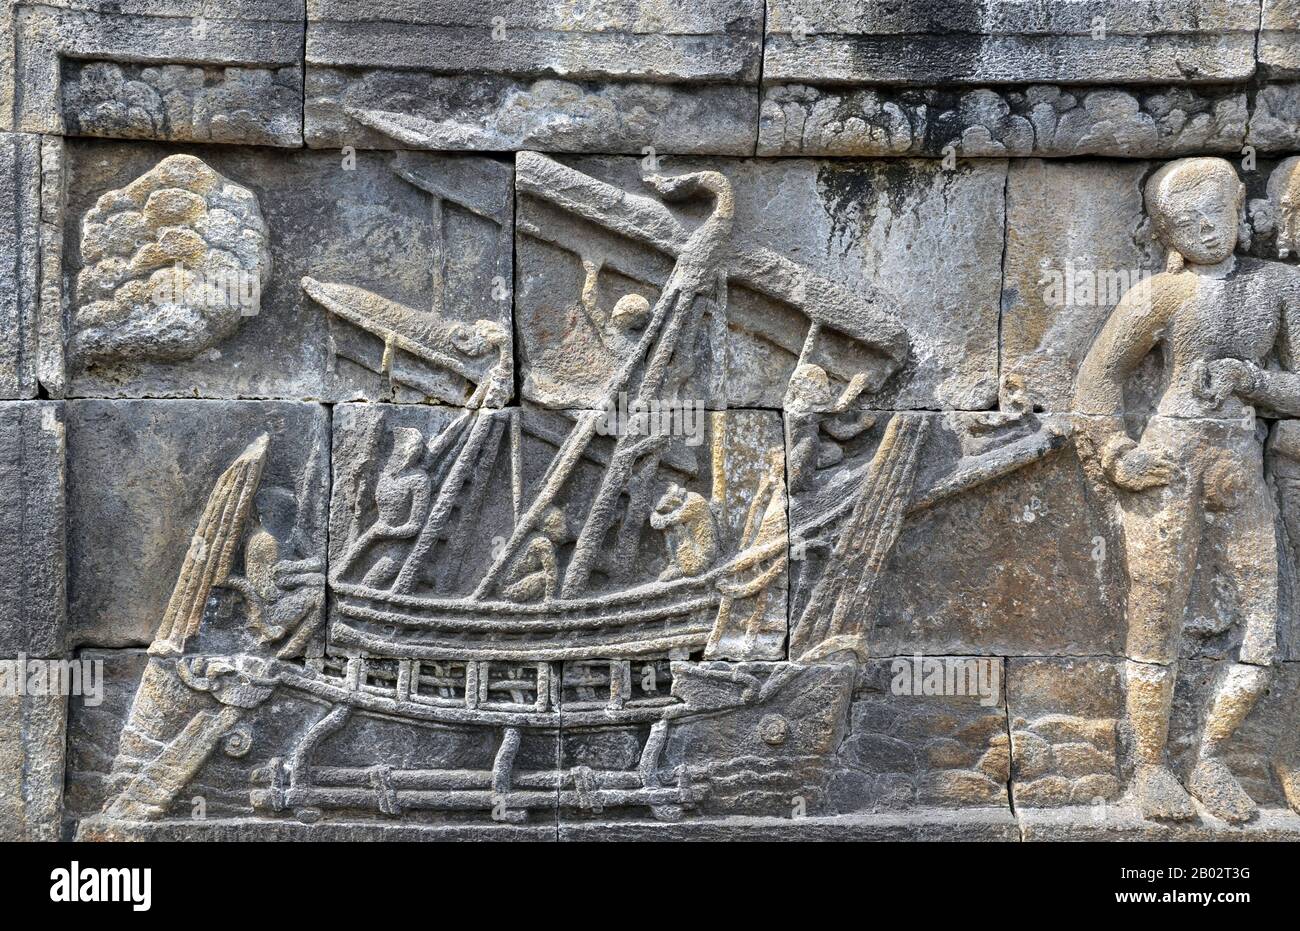 Ein Schiff aus Borobudur ist das Doppelschiff aus Holz aus dem 8. Jahrhundert, das in einigen Basreliefen des buddhistischen Borobudur Denkmals in Zentraljava, Indonesien, abgebildet ist. Die in Borobudur abgebildeten Schiffe waren höchstwahrscheinlich der Typ von Schiffen, die für inter-insuläre Handelsgeschäfte und Marinekampagnen des Thalassokratie Imperiums von Sailendran und Srivijayan eingesetzt wurden, das die Region um den 7. Bis 13. Jahrhundert beherrschte. Die Funktion des Auslegers bestand darin, das Schiff zu stabilisieren; ein einzelnes oder doppeltes Auslegerkanu ist das typische Merkmal der seemännischen Schiffe. Sie gilt als B. Stockfoto